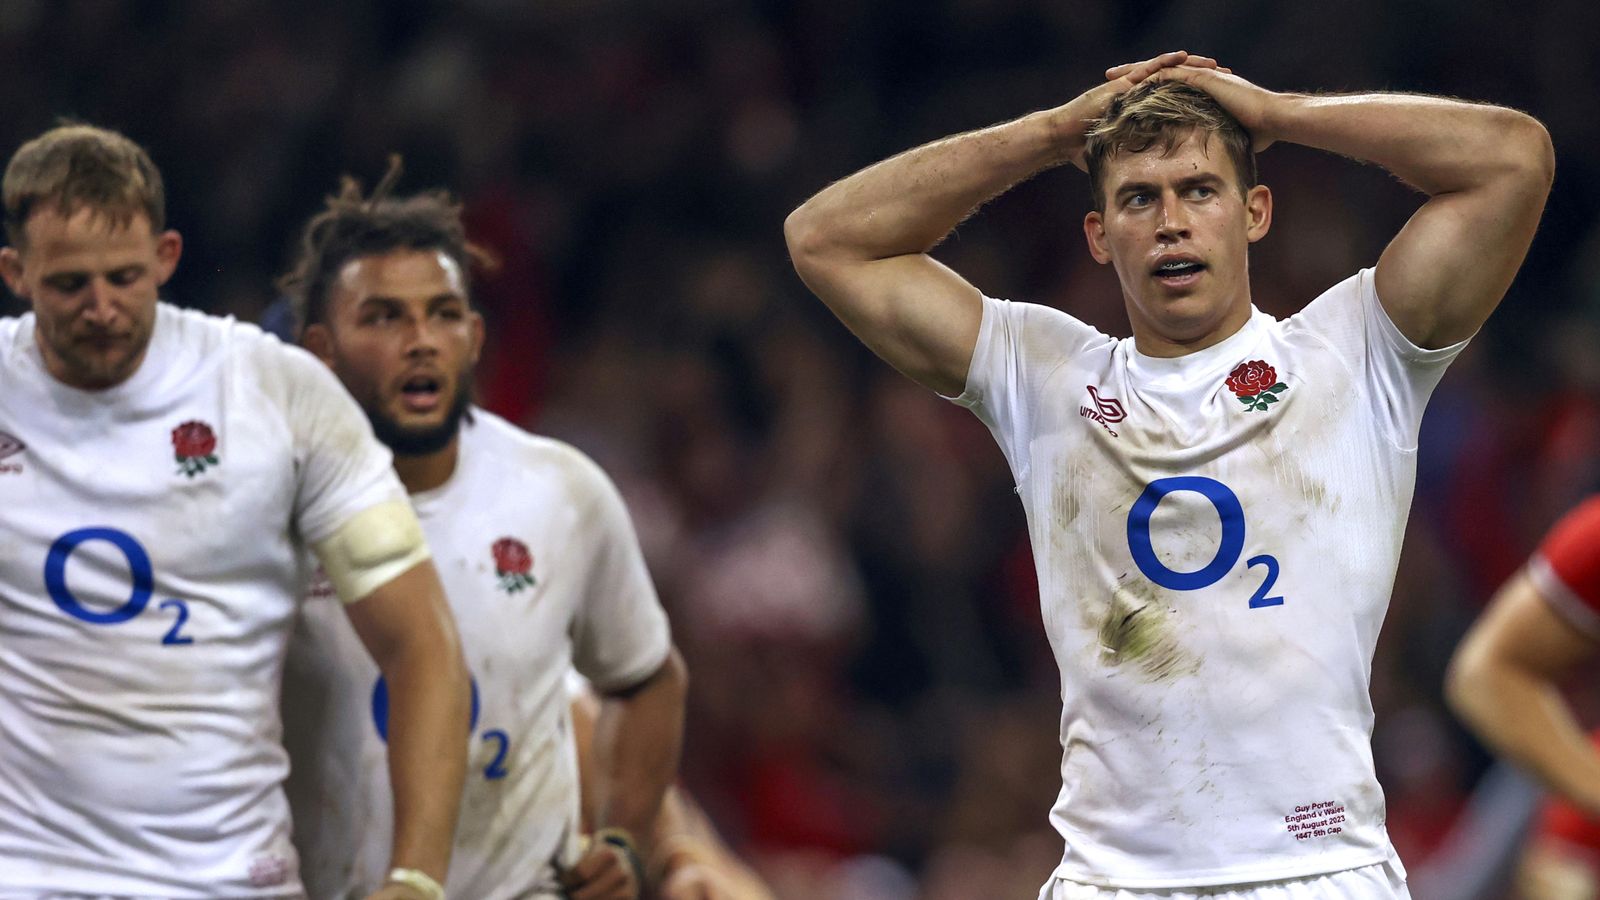 Coupe du monde de rugby: la performance décousue de l’Angleterre contre le Pays de Galles laisse des questions avant l’annonce de l’équipe |  Actualités du rugby à XV